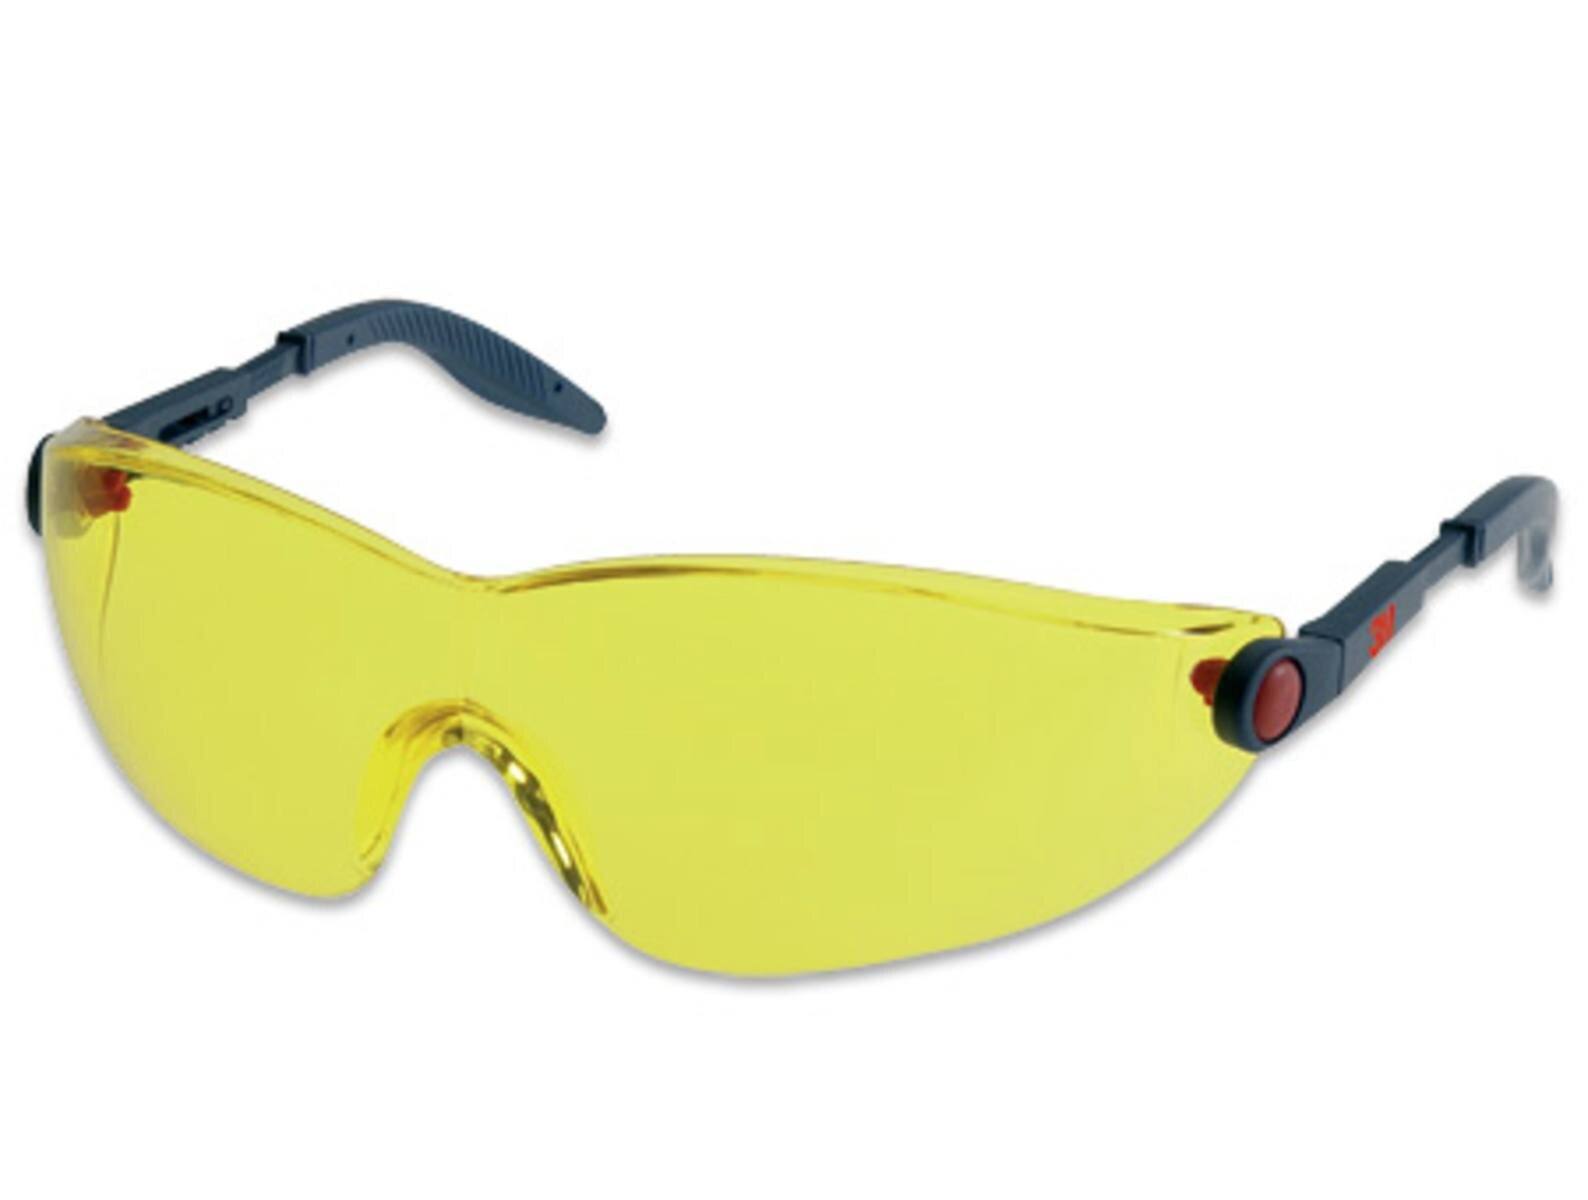 3M 2742 Schutzbrille AS/AF/UV, PC, gelb getönt, einstellbare Bügellänge und -neigung, softe Bügelenden